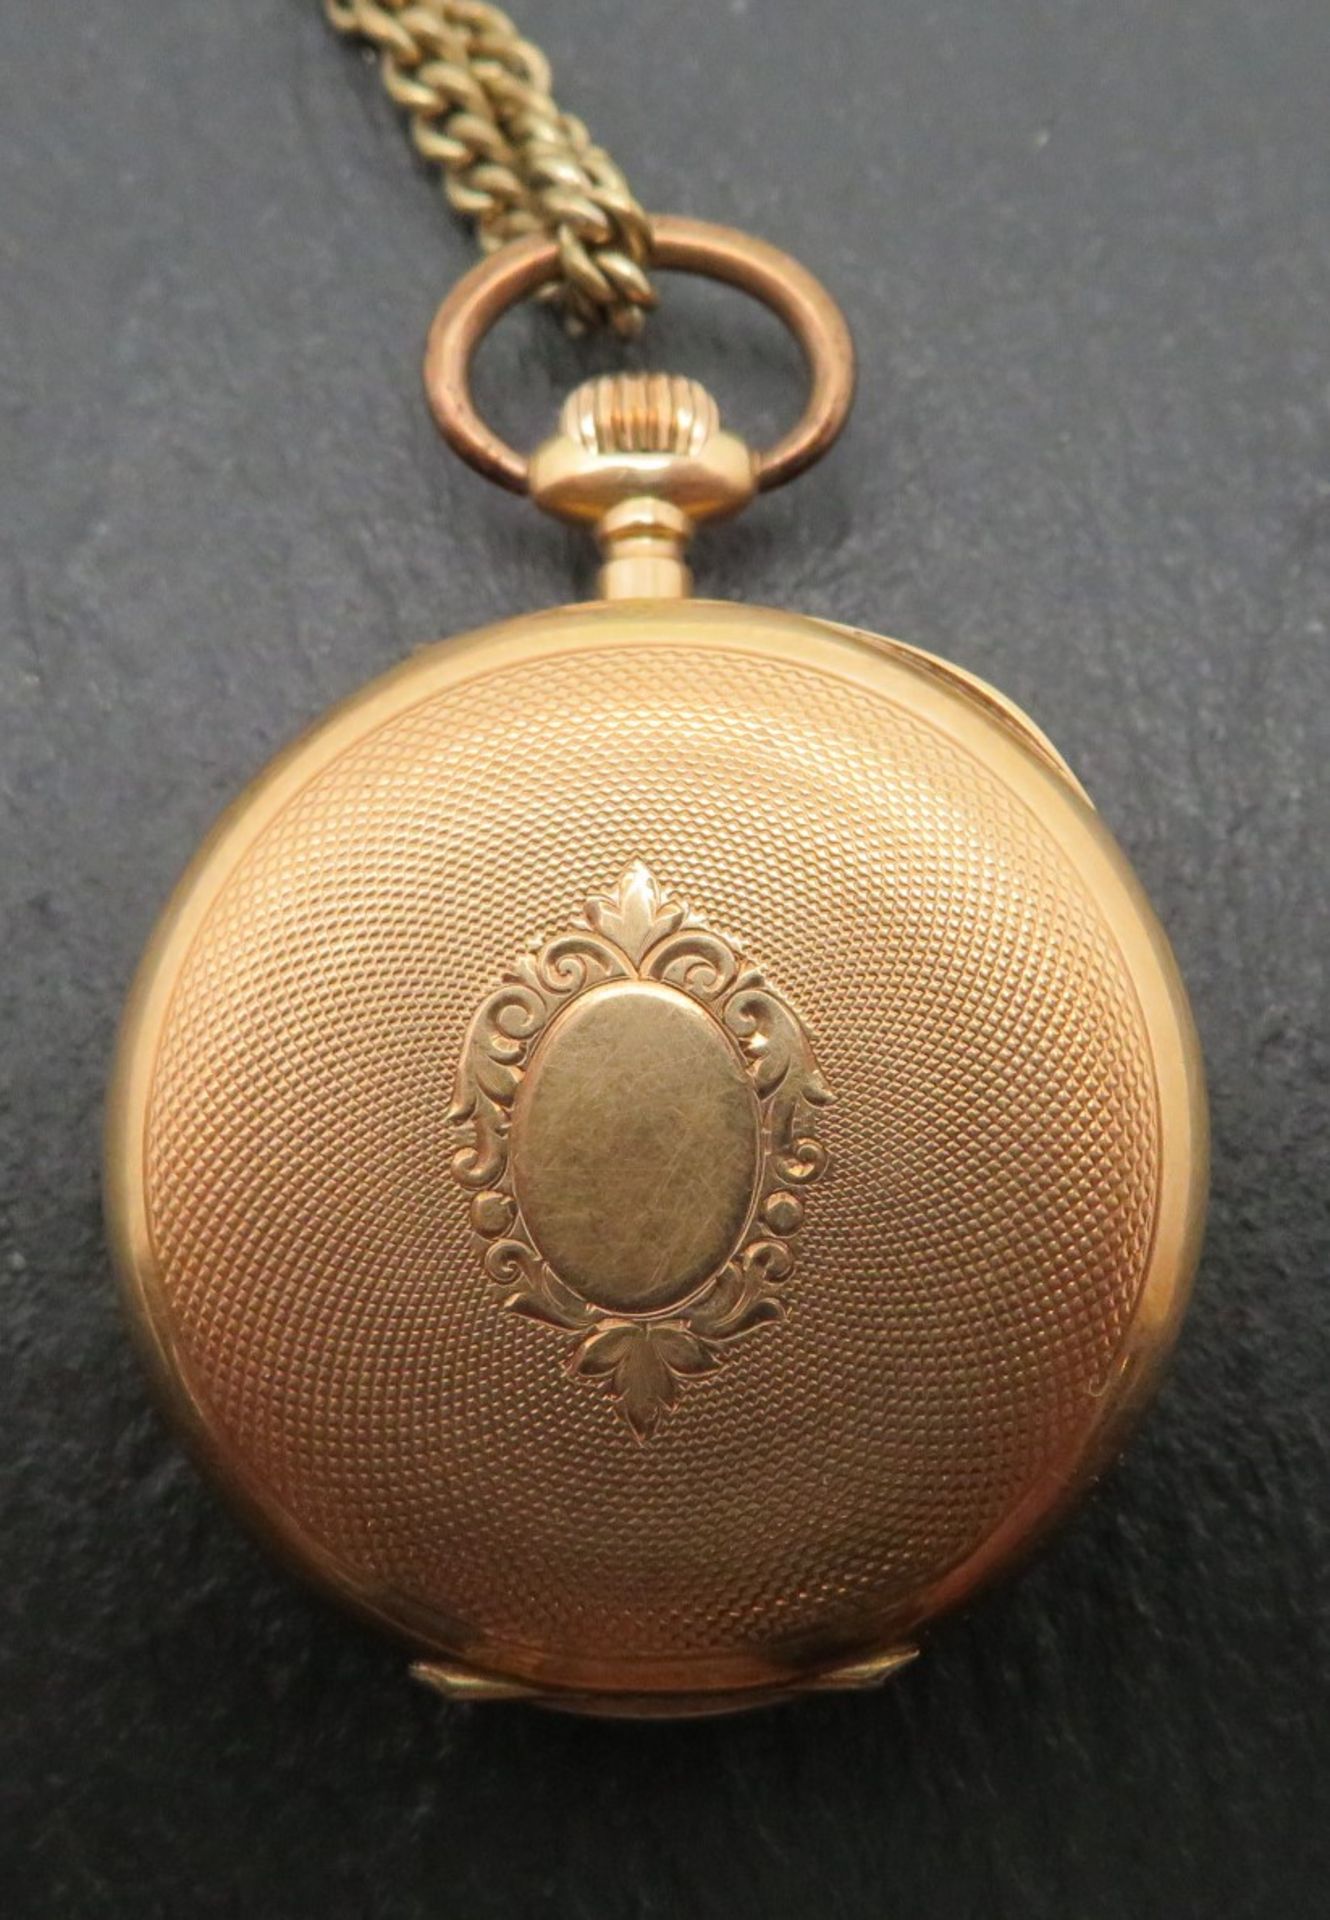 Damentaschenuhr an vergoldeter Uhrenkette, Gehäuse Gelbgold 585/000, punziert, Innendeckel Metall, - Image 2 of 3